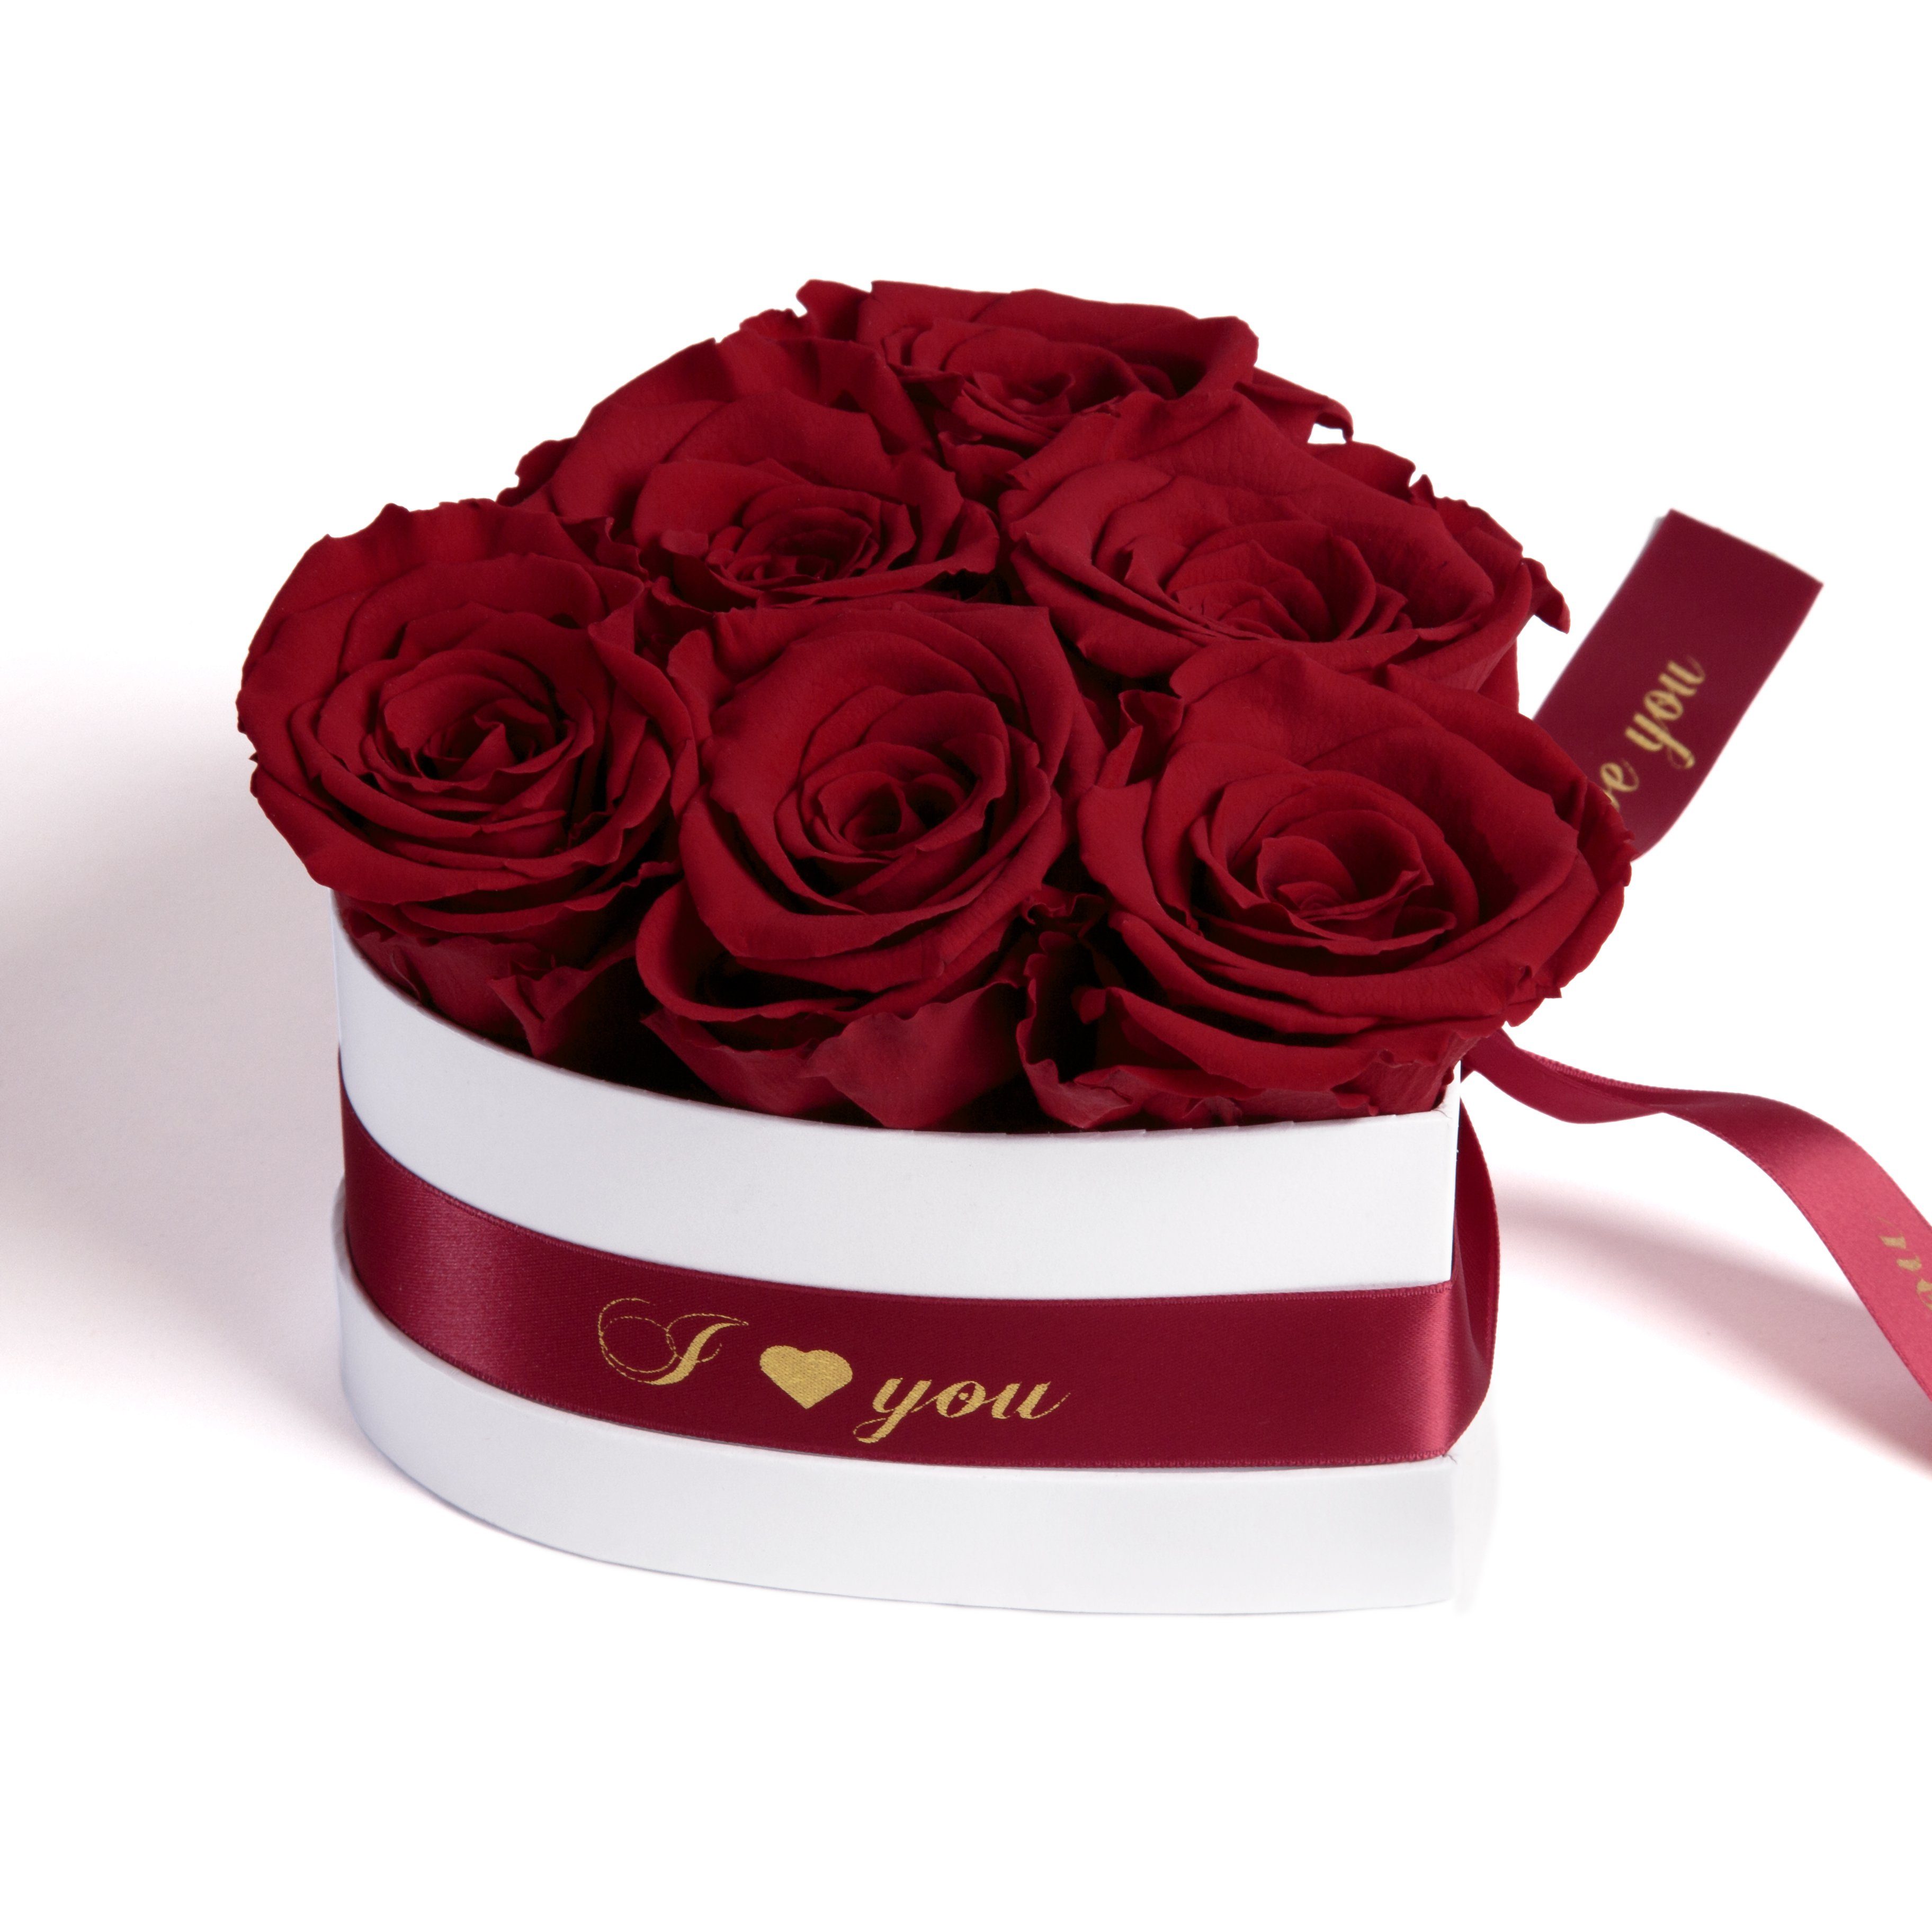 Kunstblume Infinity Rosenbox Herz 6 ewige Rosen I Love You Geschenk für Frauen Rose, ROSEMARIE SCHULZ Heidelberg, Höhe 10 cm, Valentinstag Geschenk für Frau